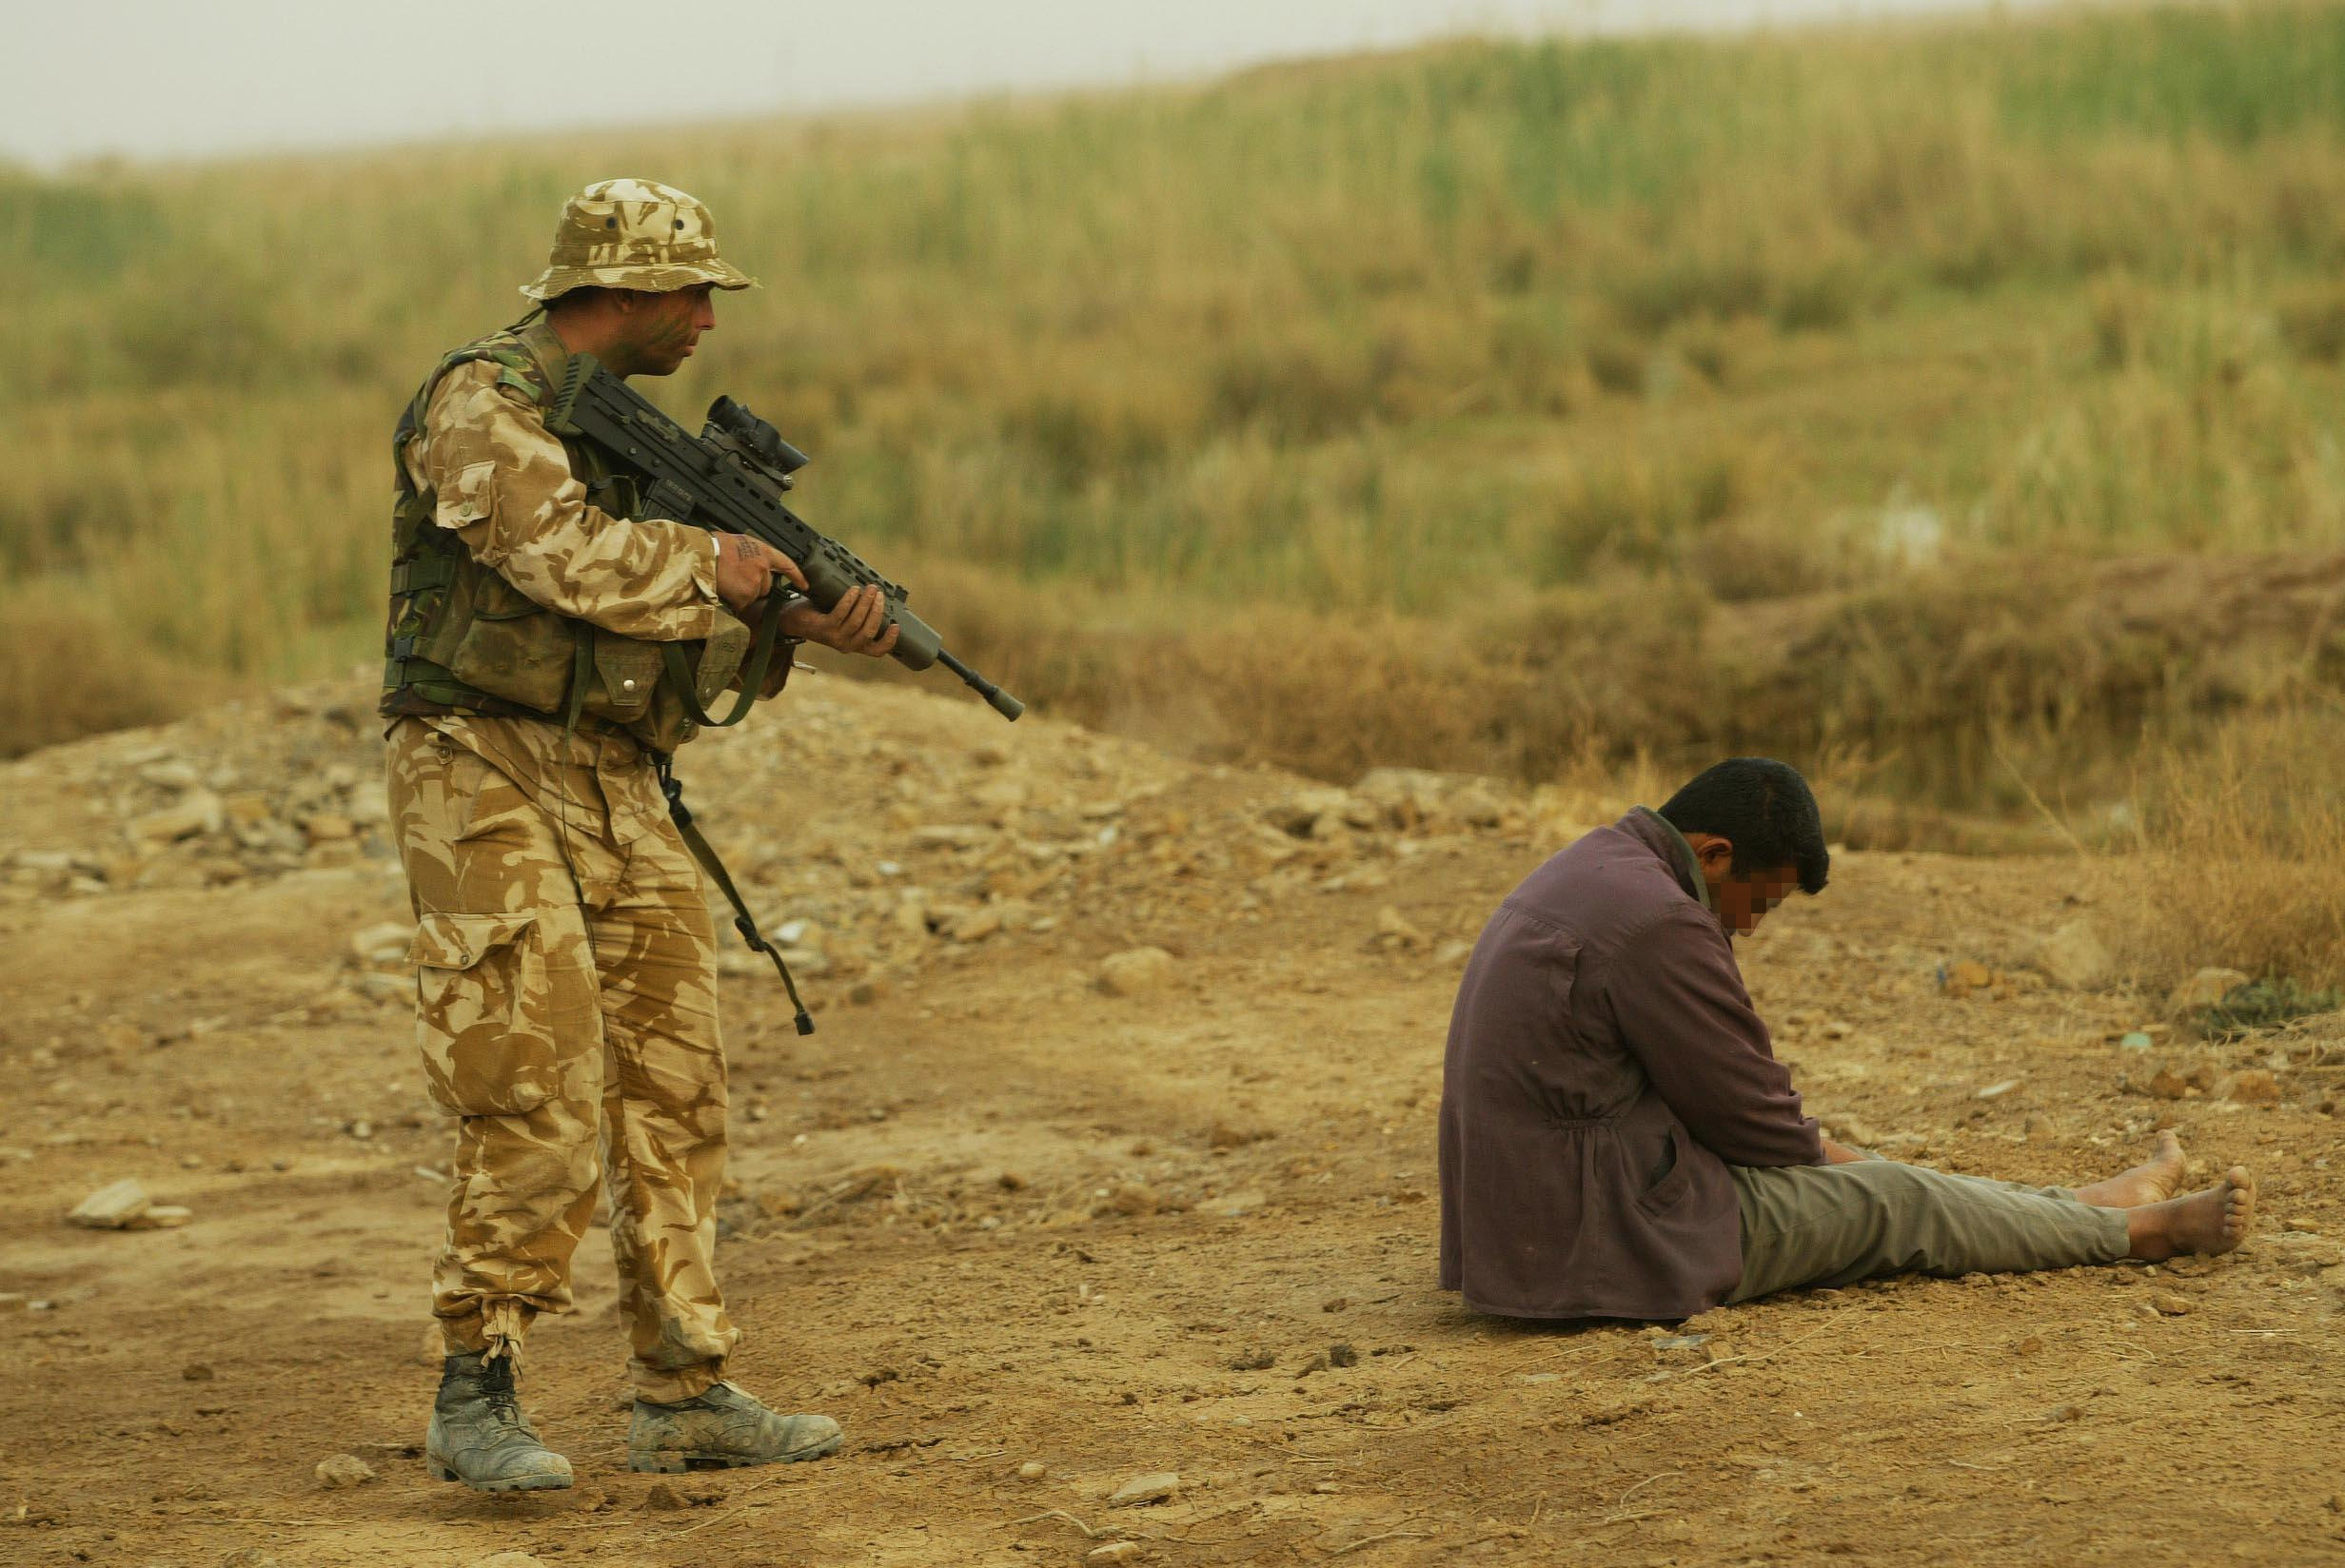 جندي من البحرية البريطانية يقف حراسة على عضو من حزب البعث، جنوب شرق البصرة، العراق، 26 مارس 2003. بي آيه إيميدجز عبر رويترز.